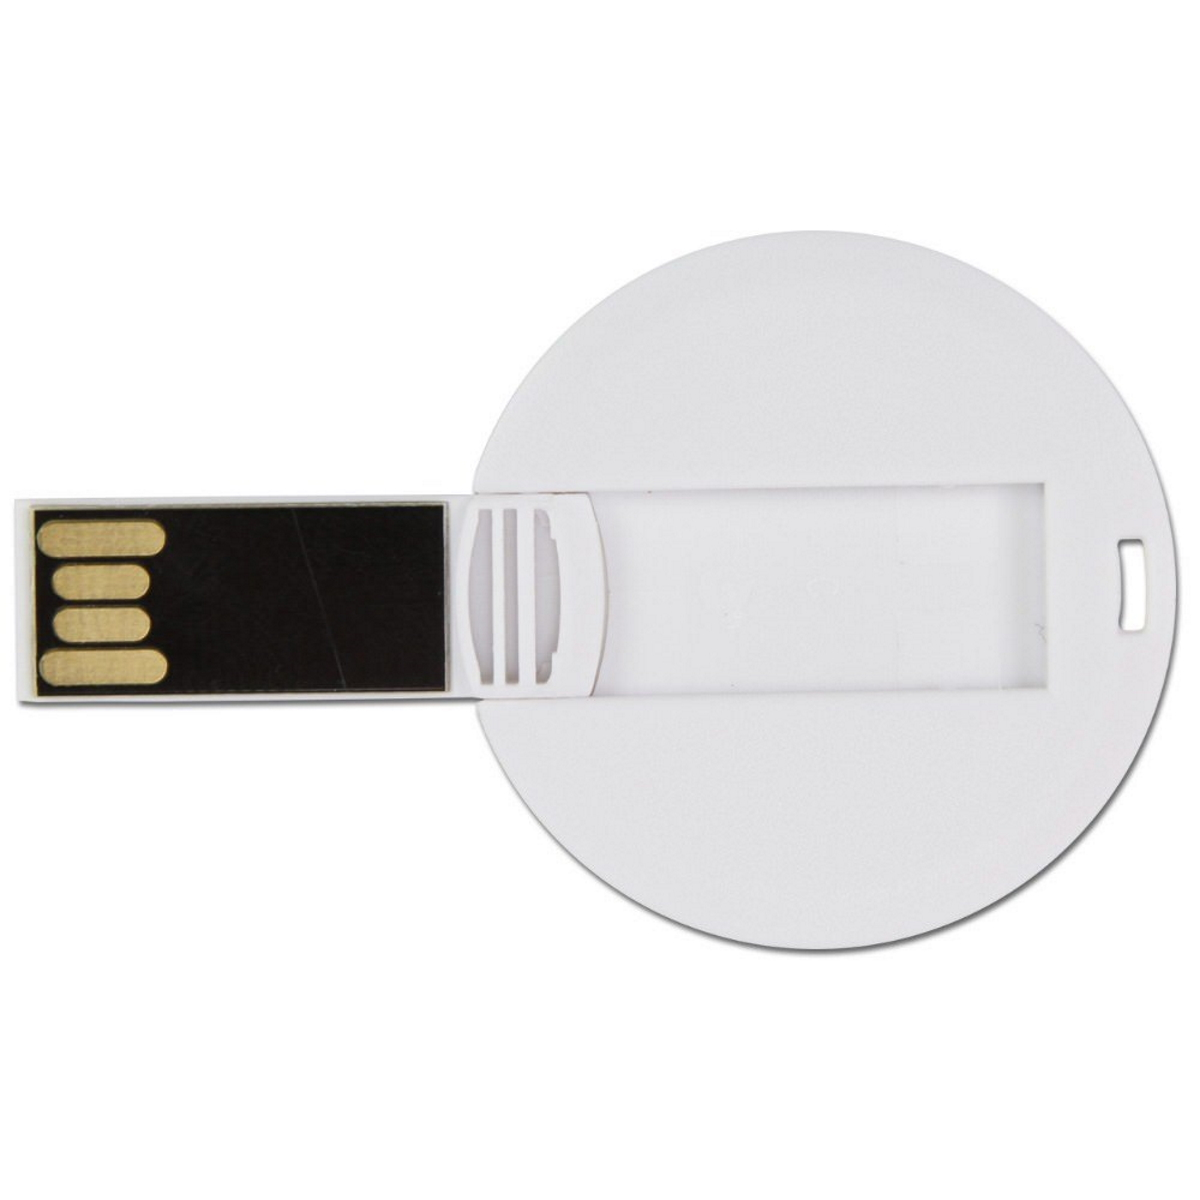 (Weiß, GB) ® USB USB-Stick DISC GERMANY 64